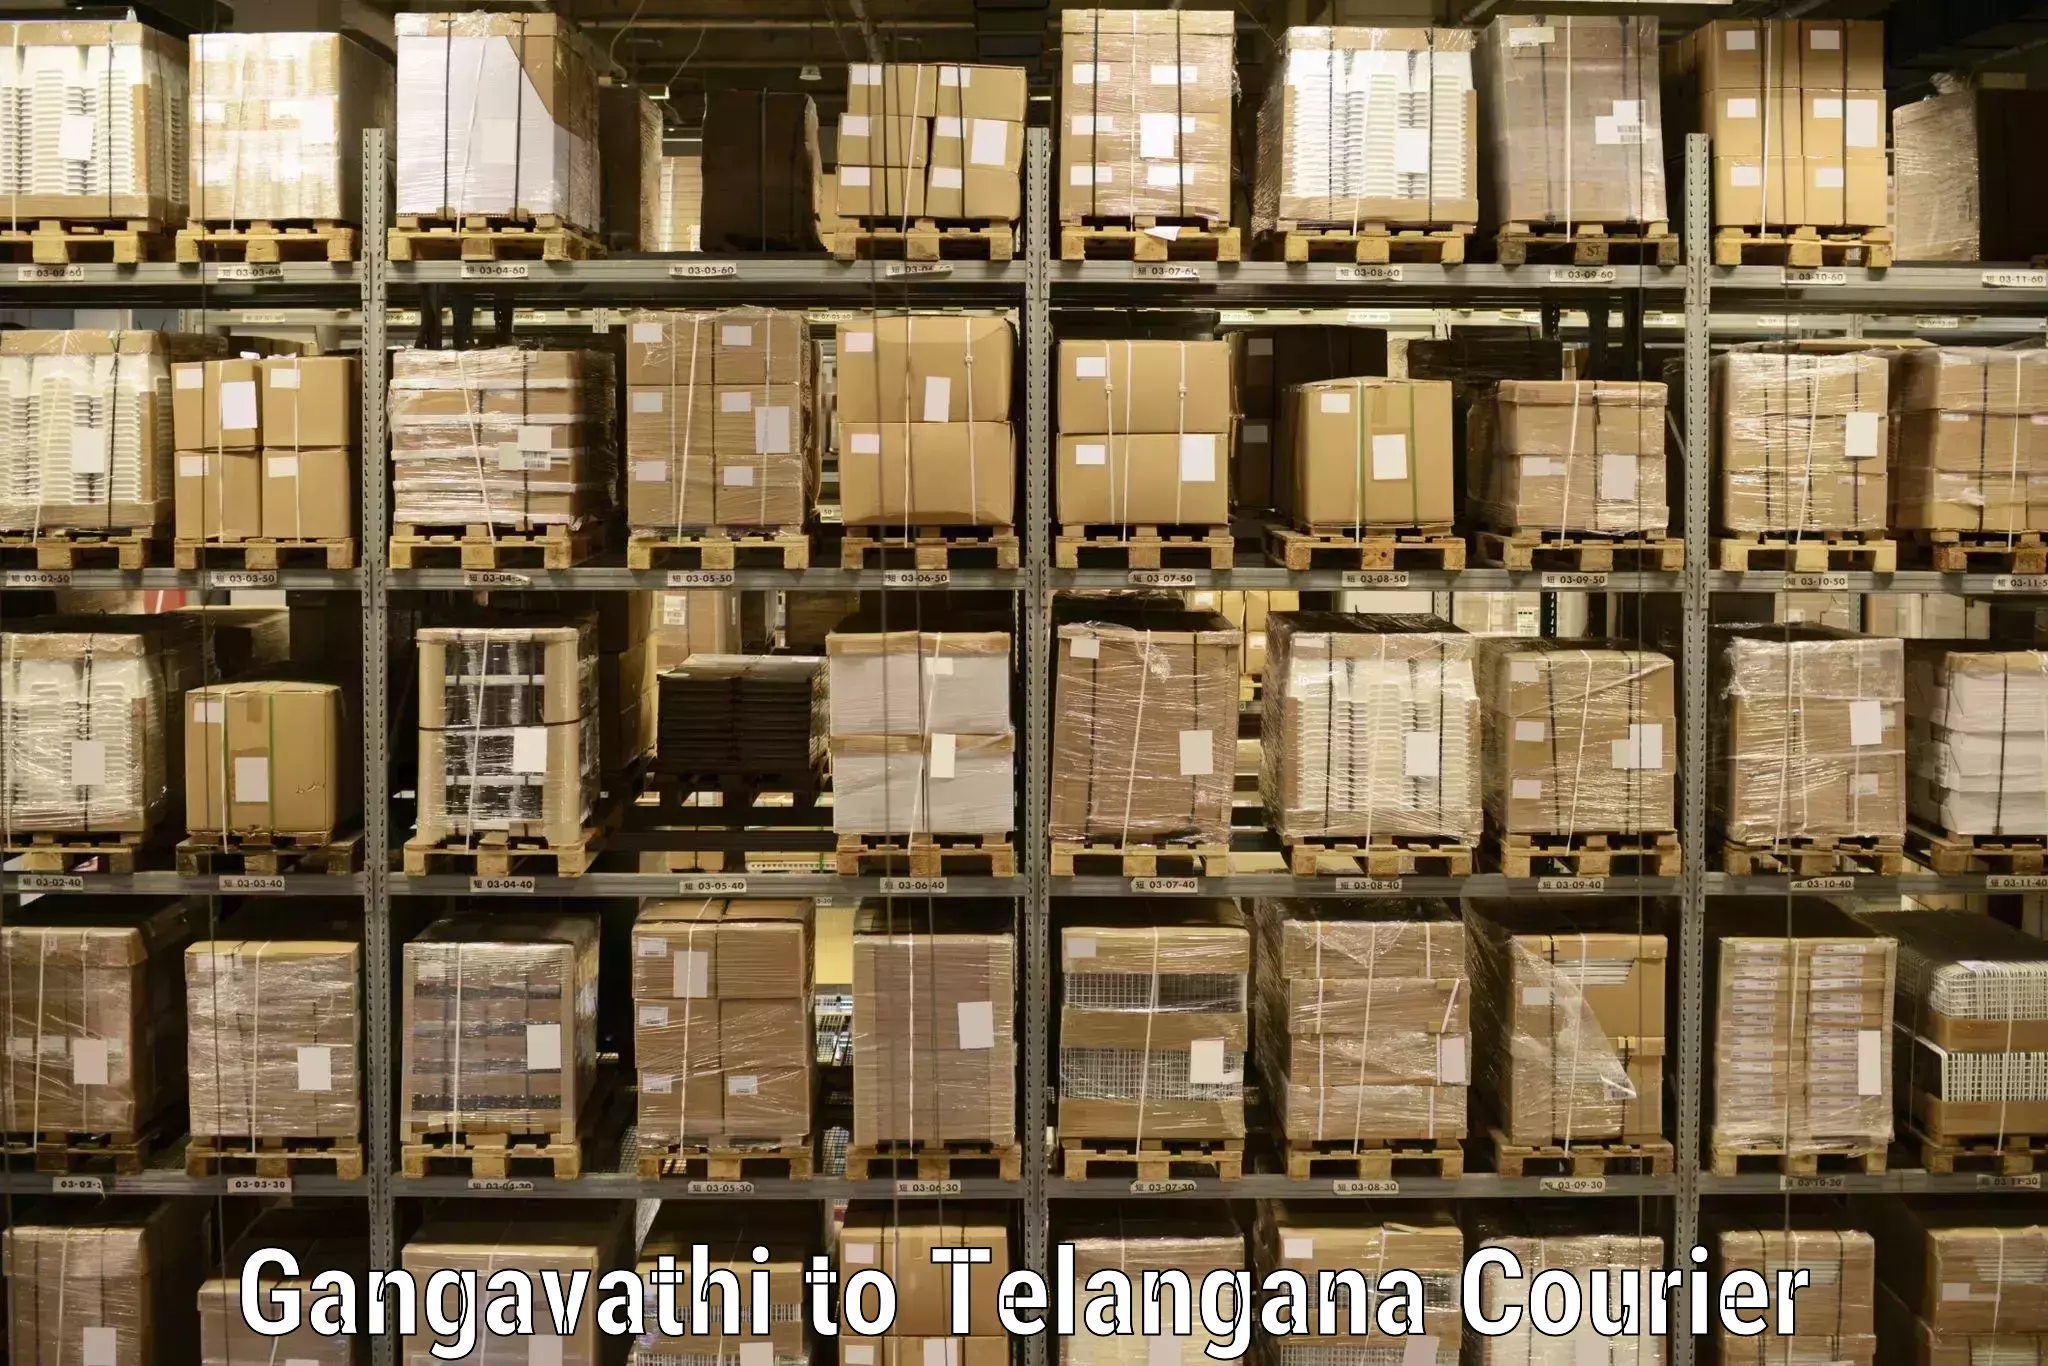 Full-service courier options Gangavathi to Eligedu